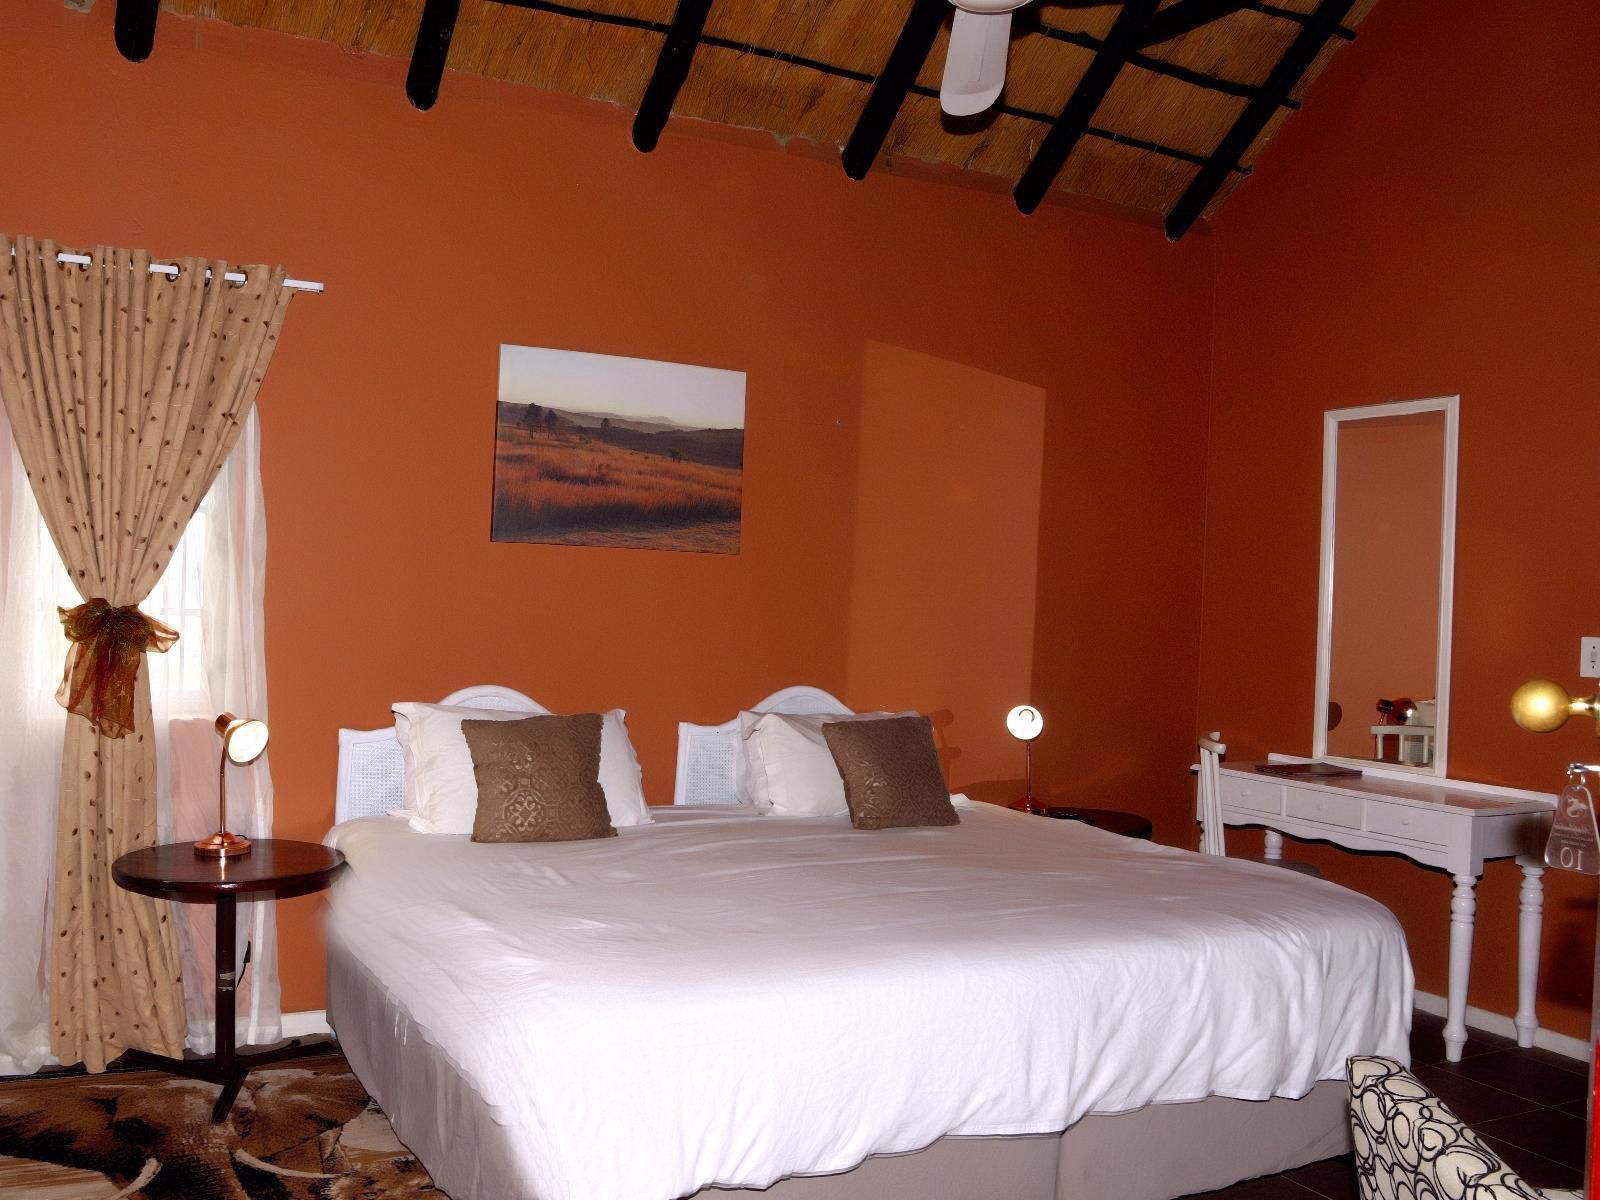 Sterkfontein Heritage Lodge Krugersdorp Gauteng South Africa Bedroom